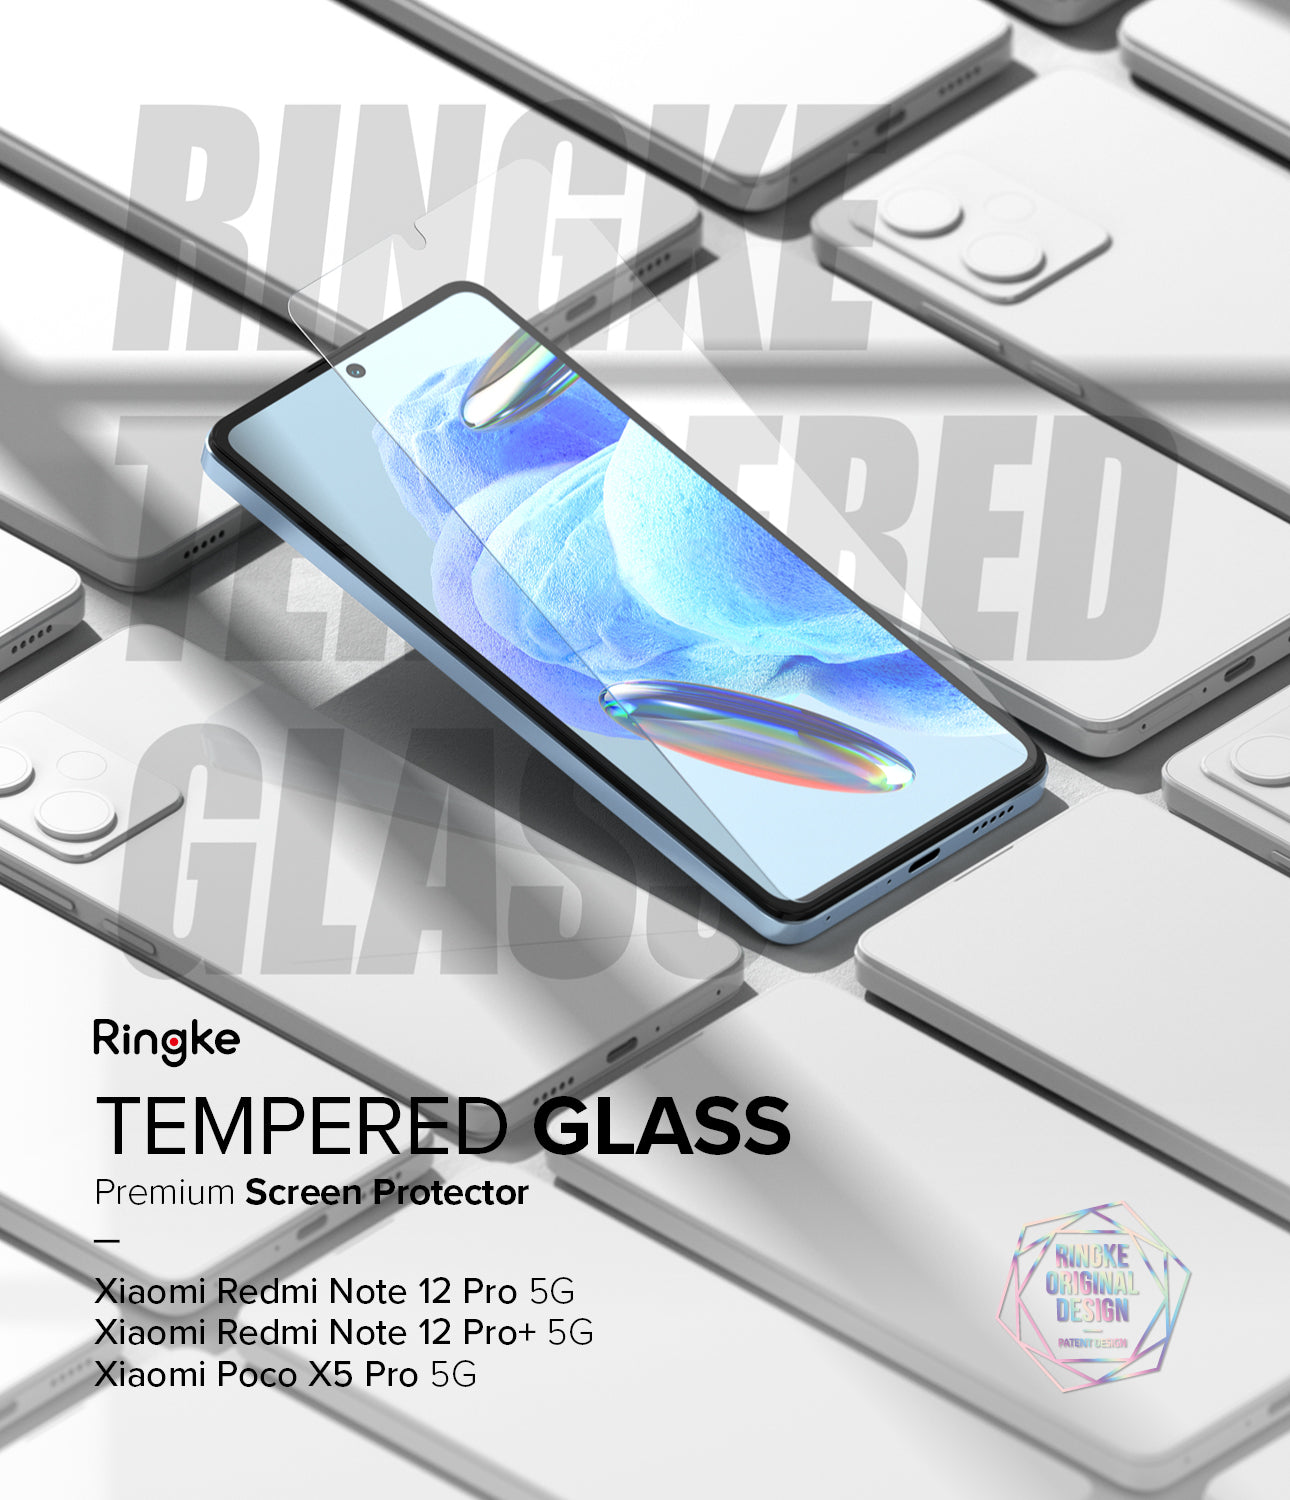 Tempered Glass (2P) Premium screen protector designed for the Xiaomi Redmi Note 12 Pro 5G / 12 Pro Plus 5G / Poco X5 Pro 5G